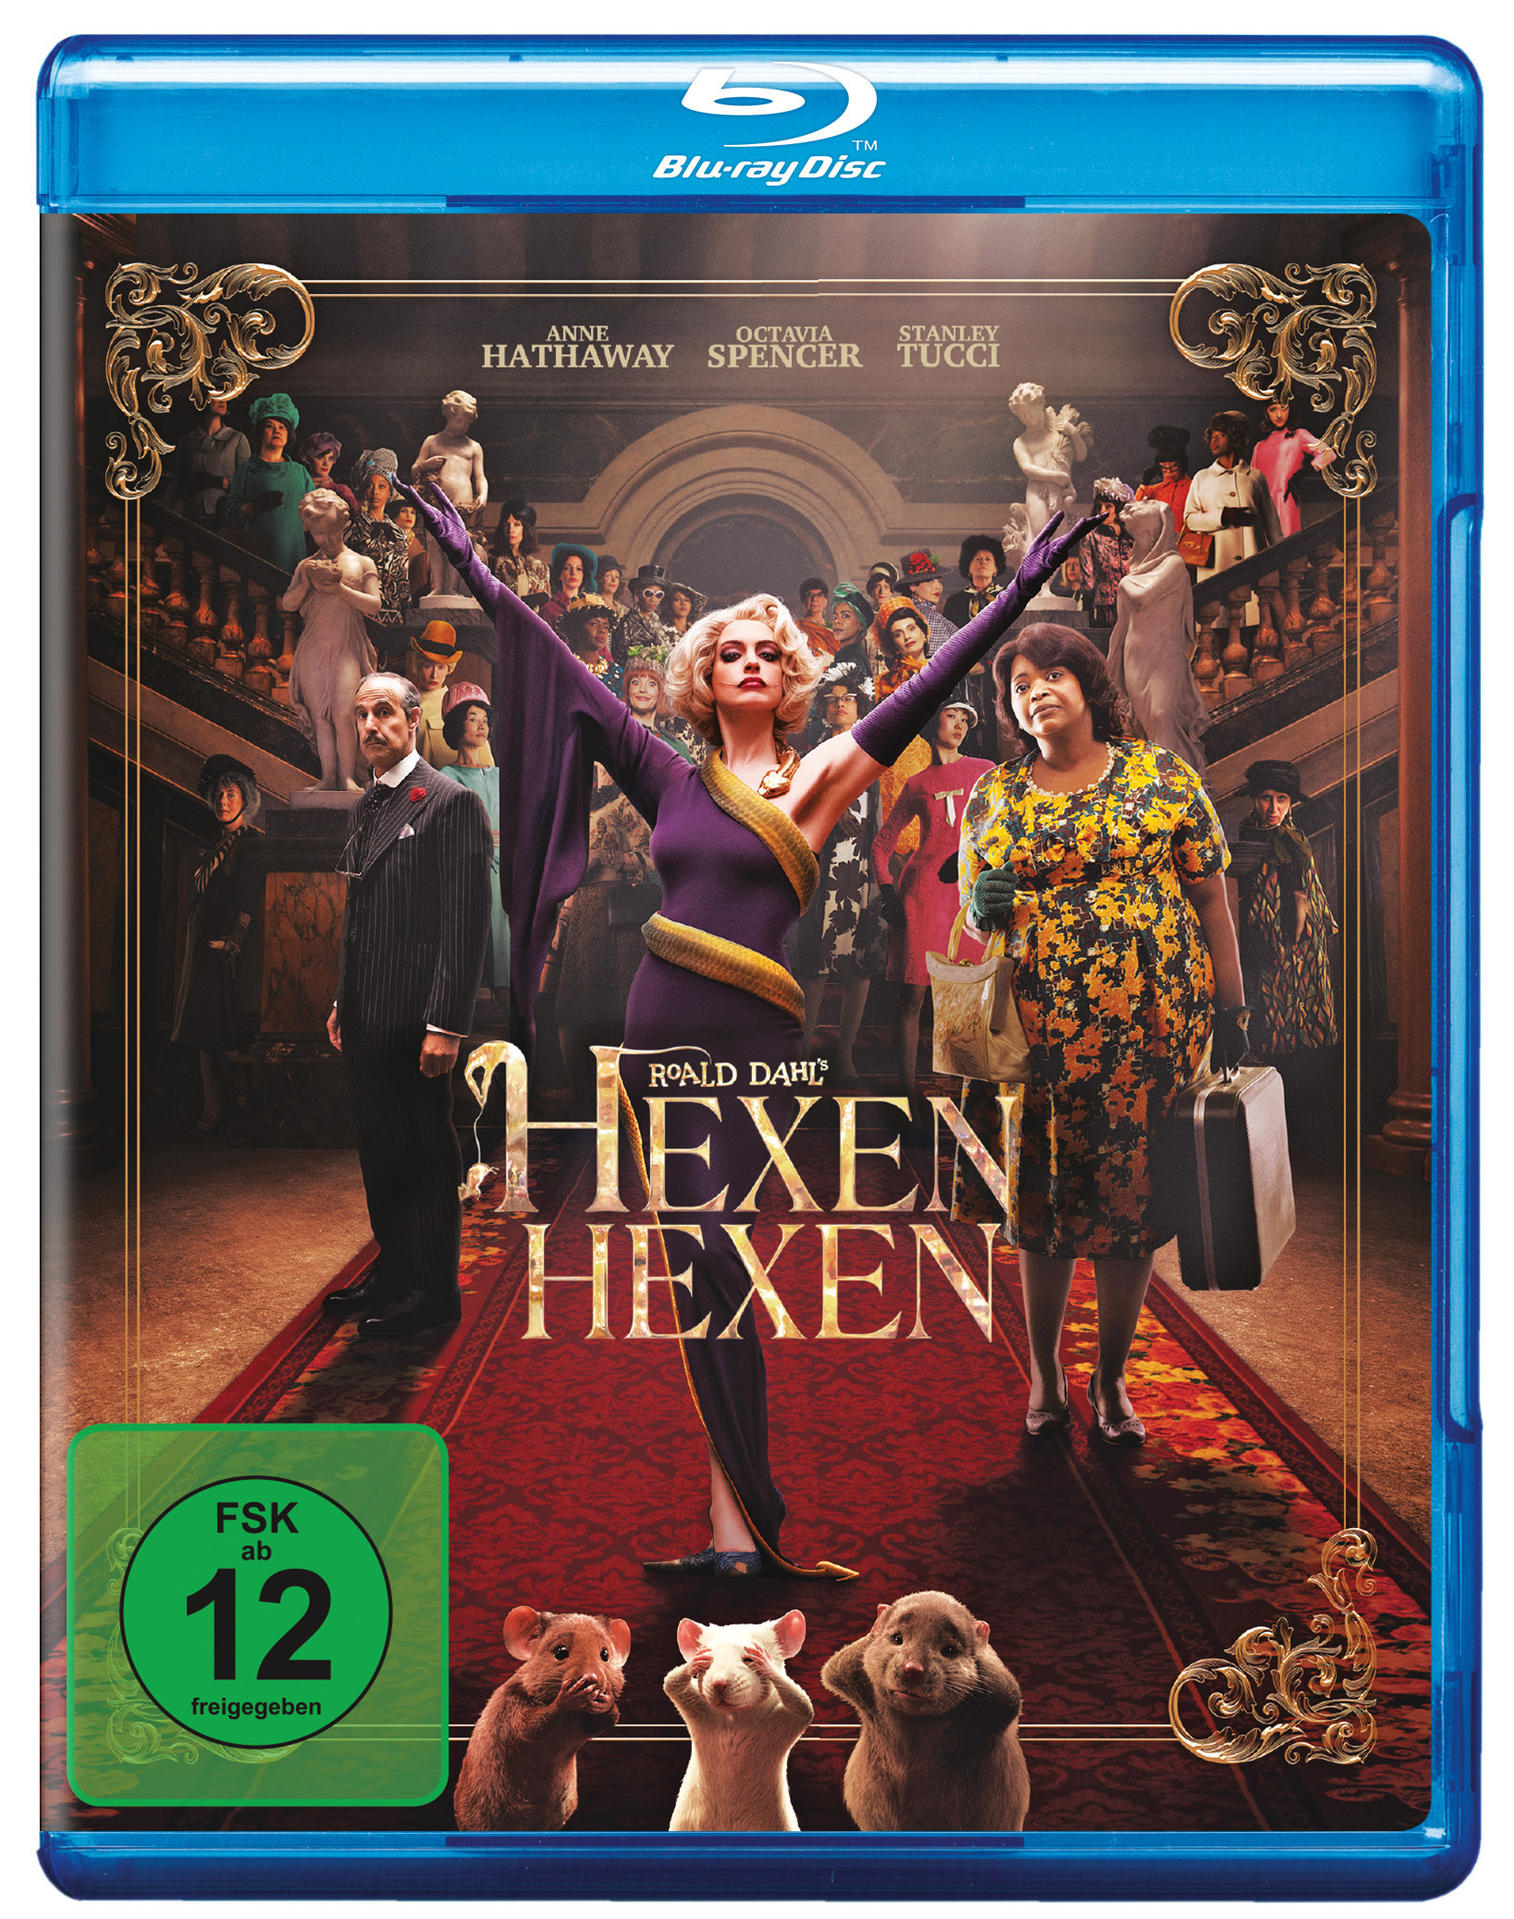 Hexen hexen Blu-ray